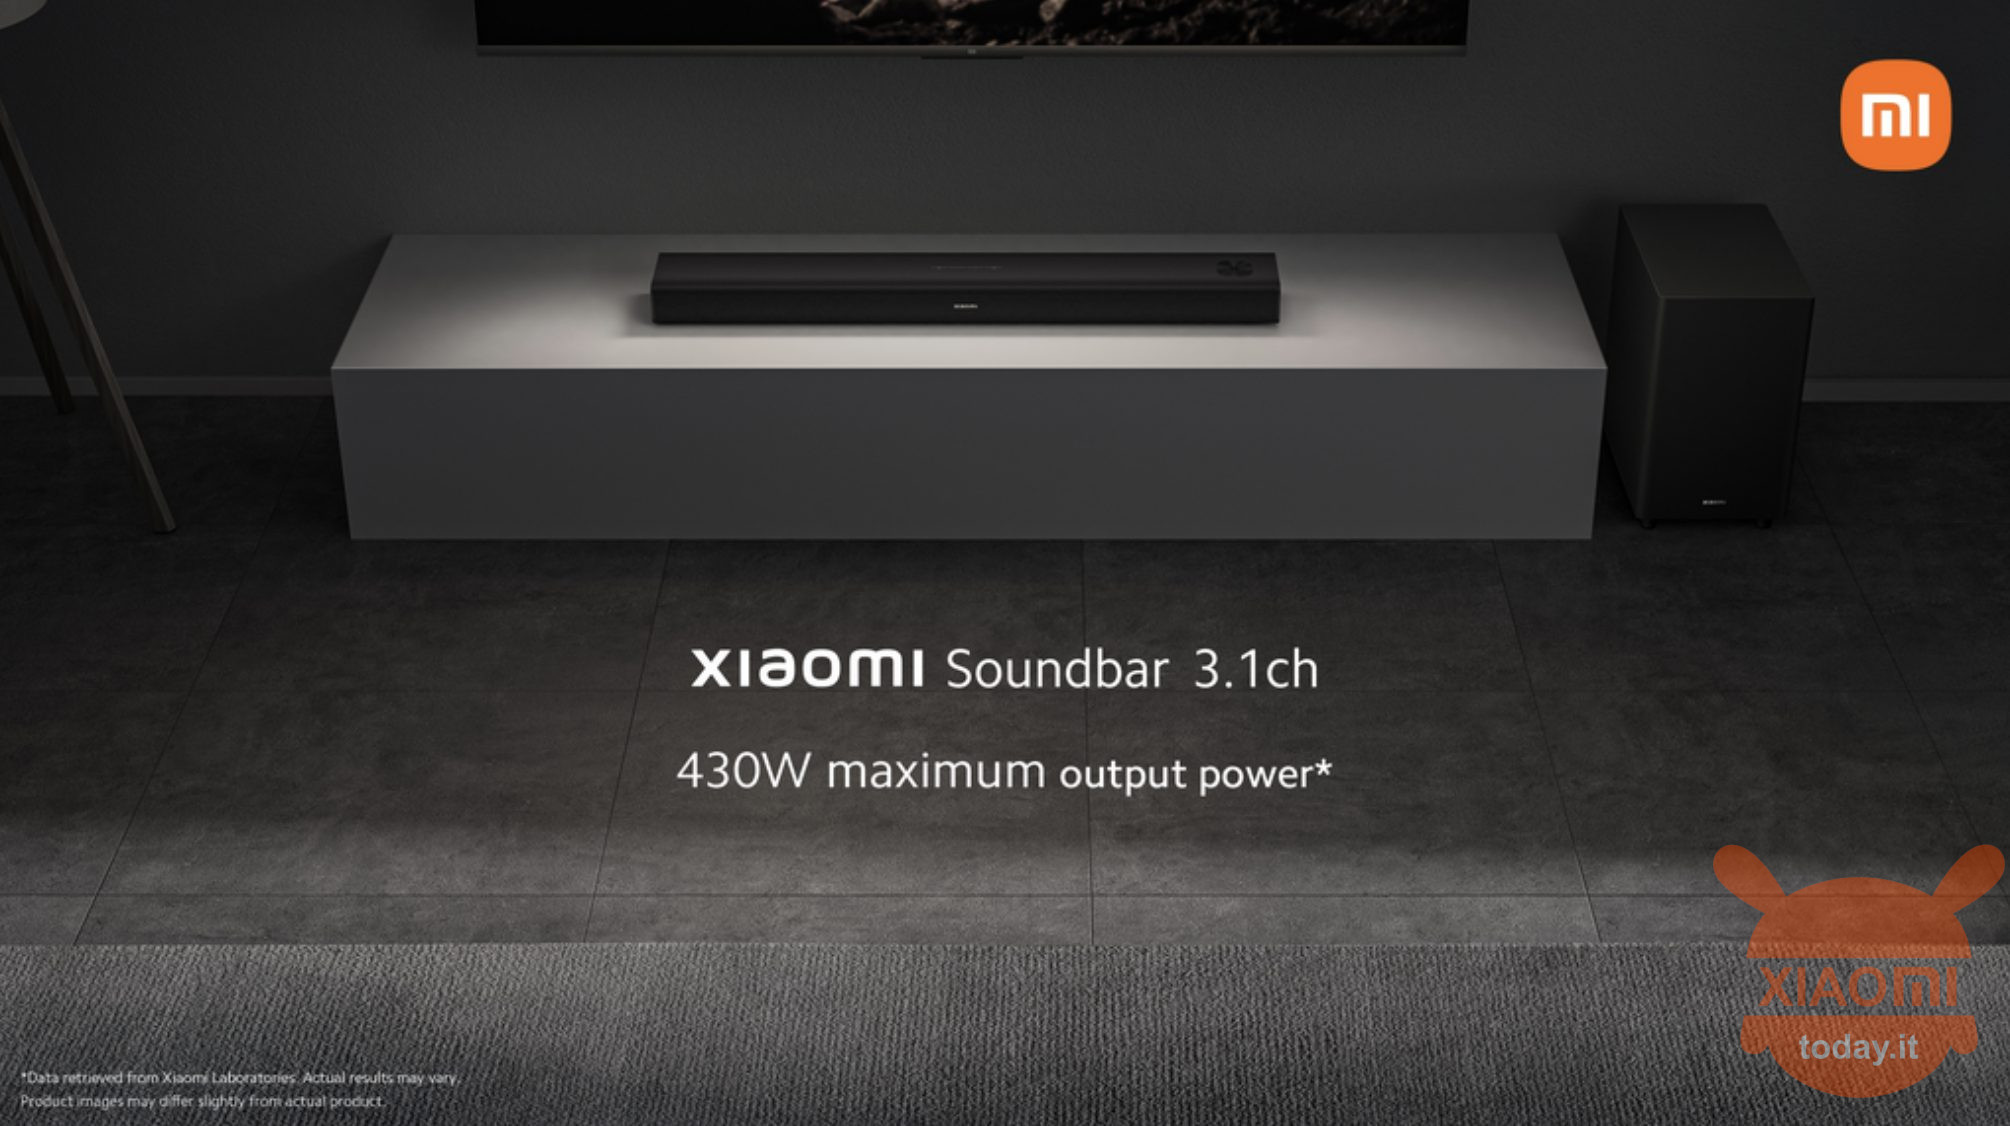 xiaomi soundbar 3.1ch ufficiale: specifiche e uscita della prima soundbar di xiaomi sul mercato global